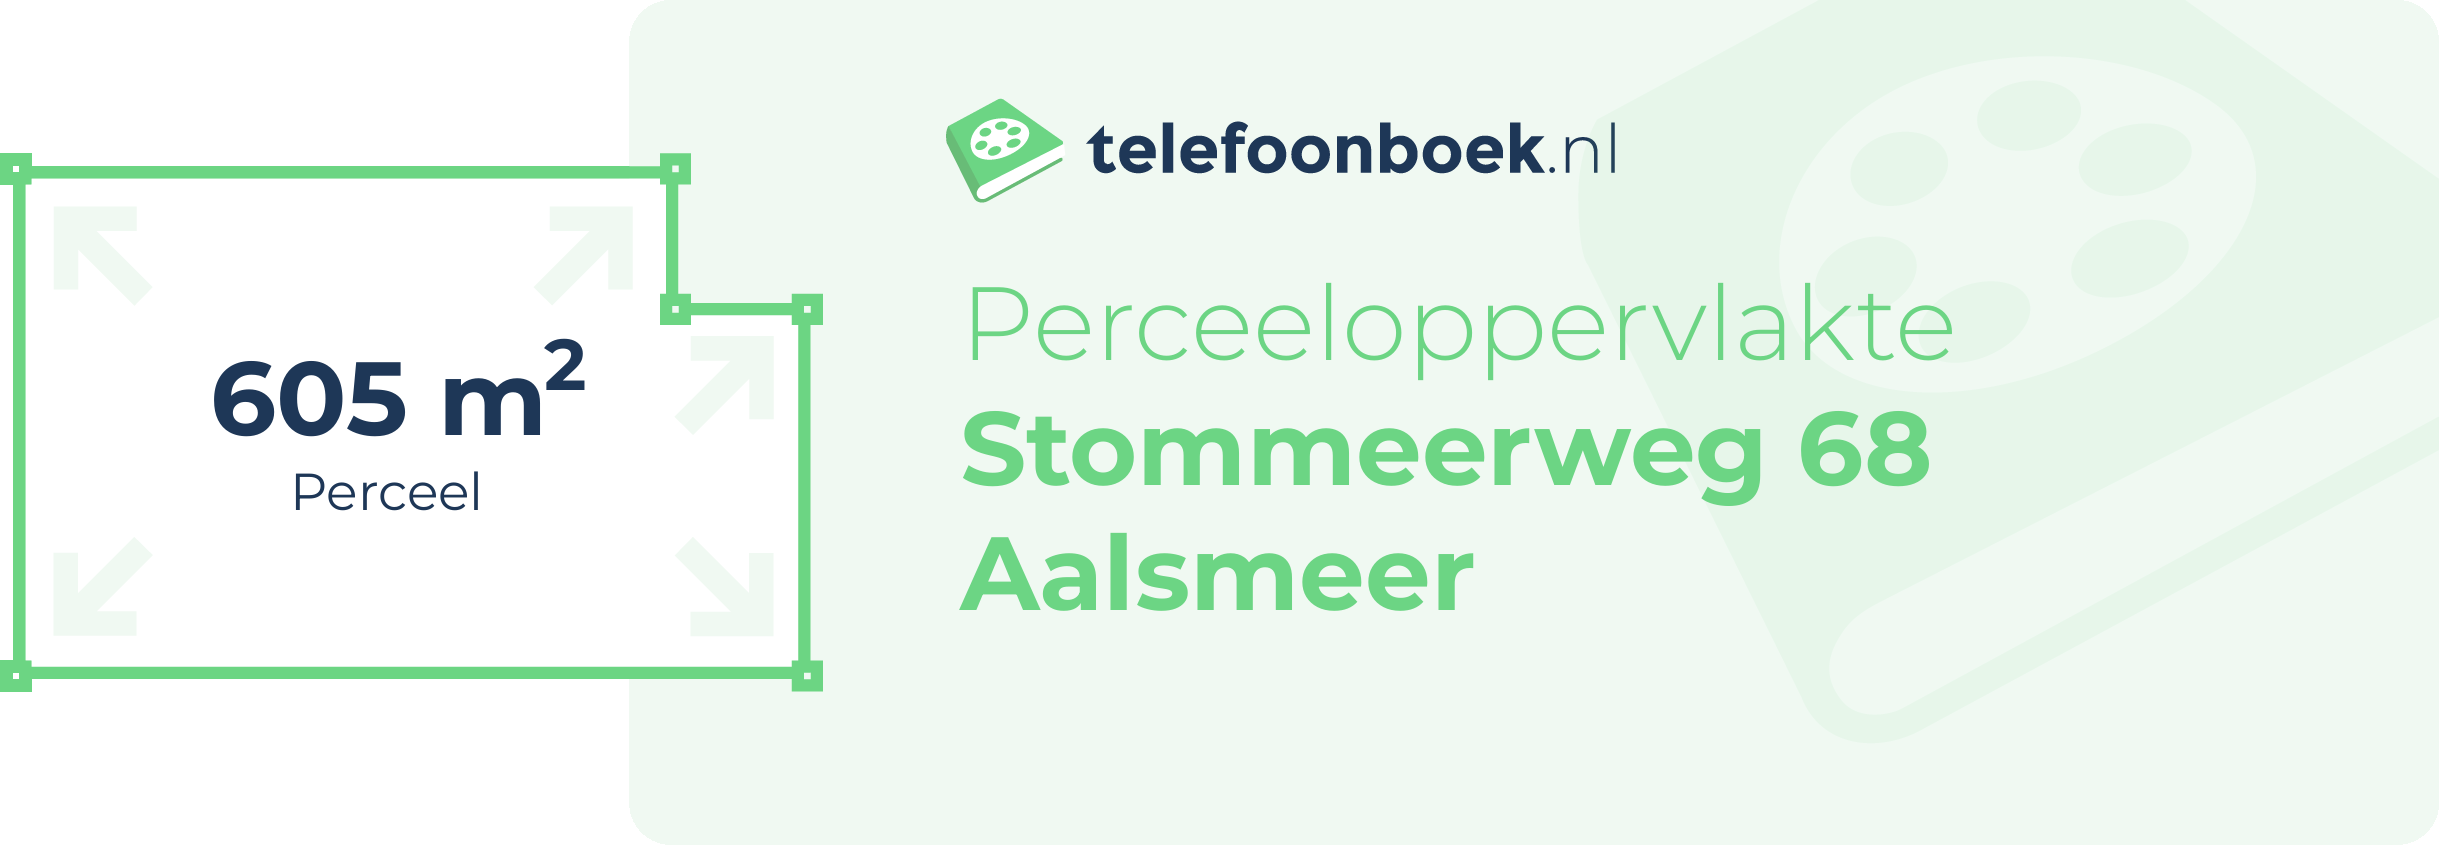 Perceeloppervlakte Stommeerweg 68 Aalsmeer